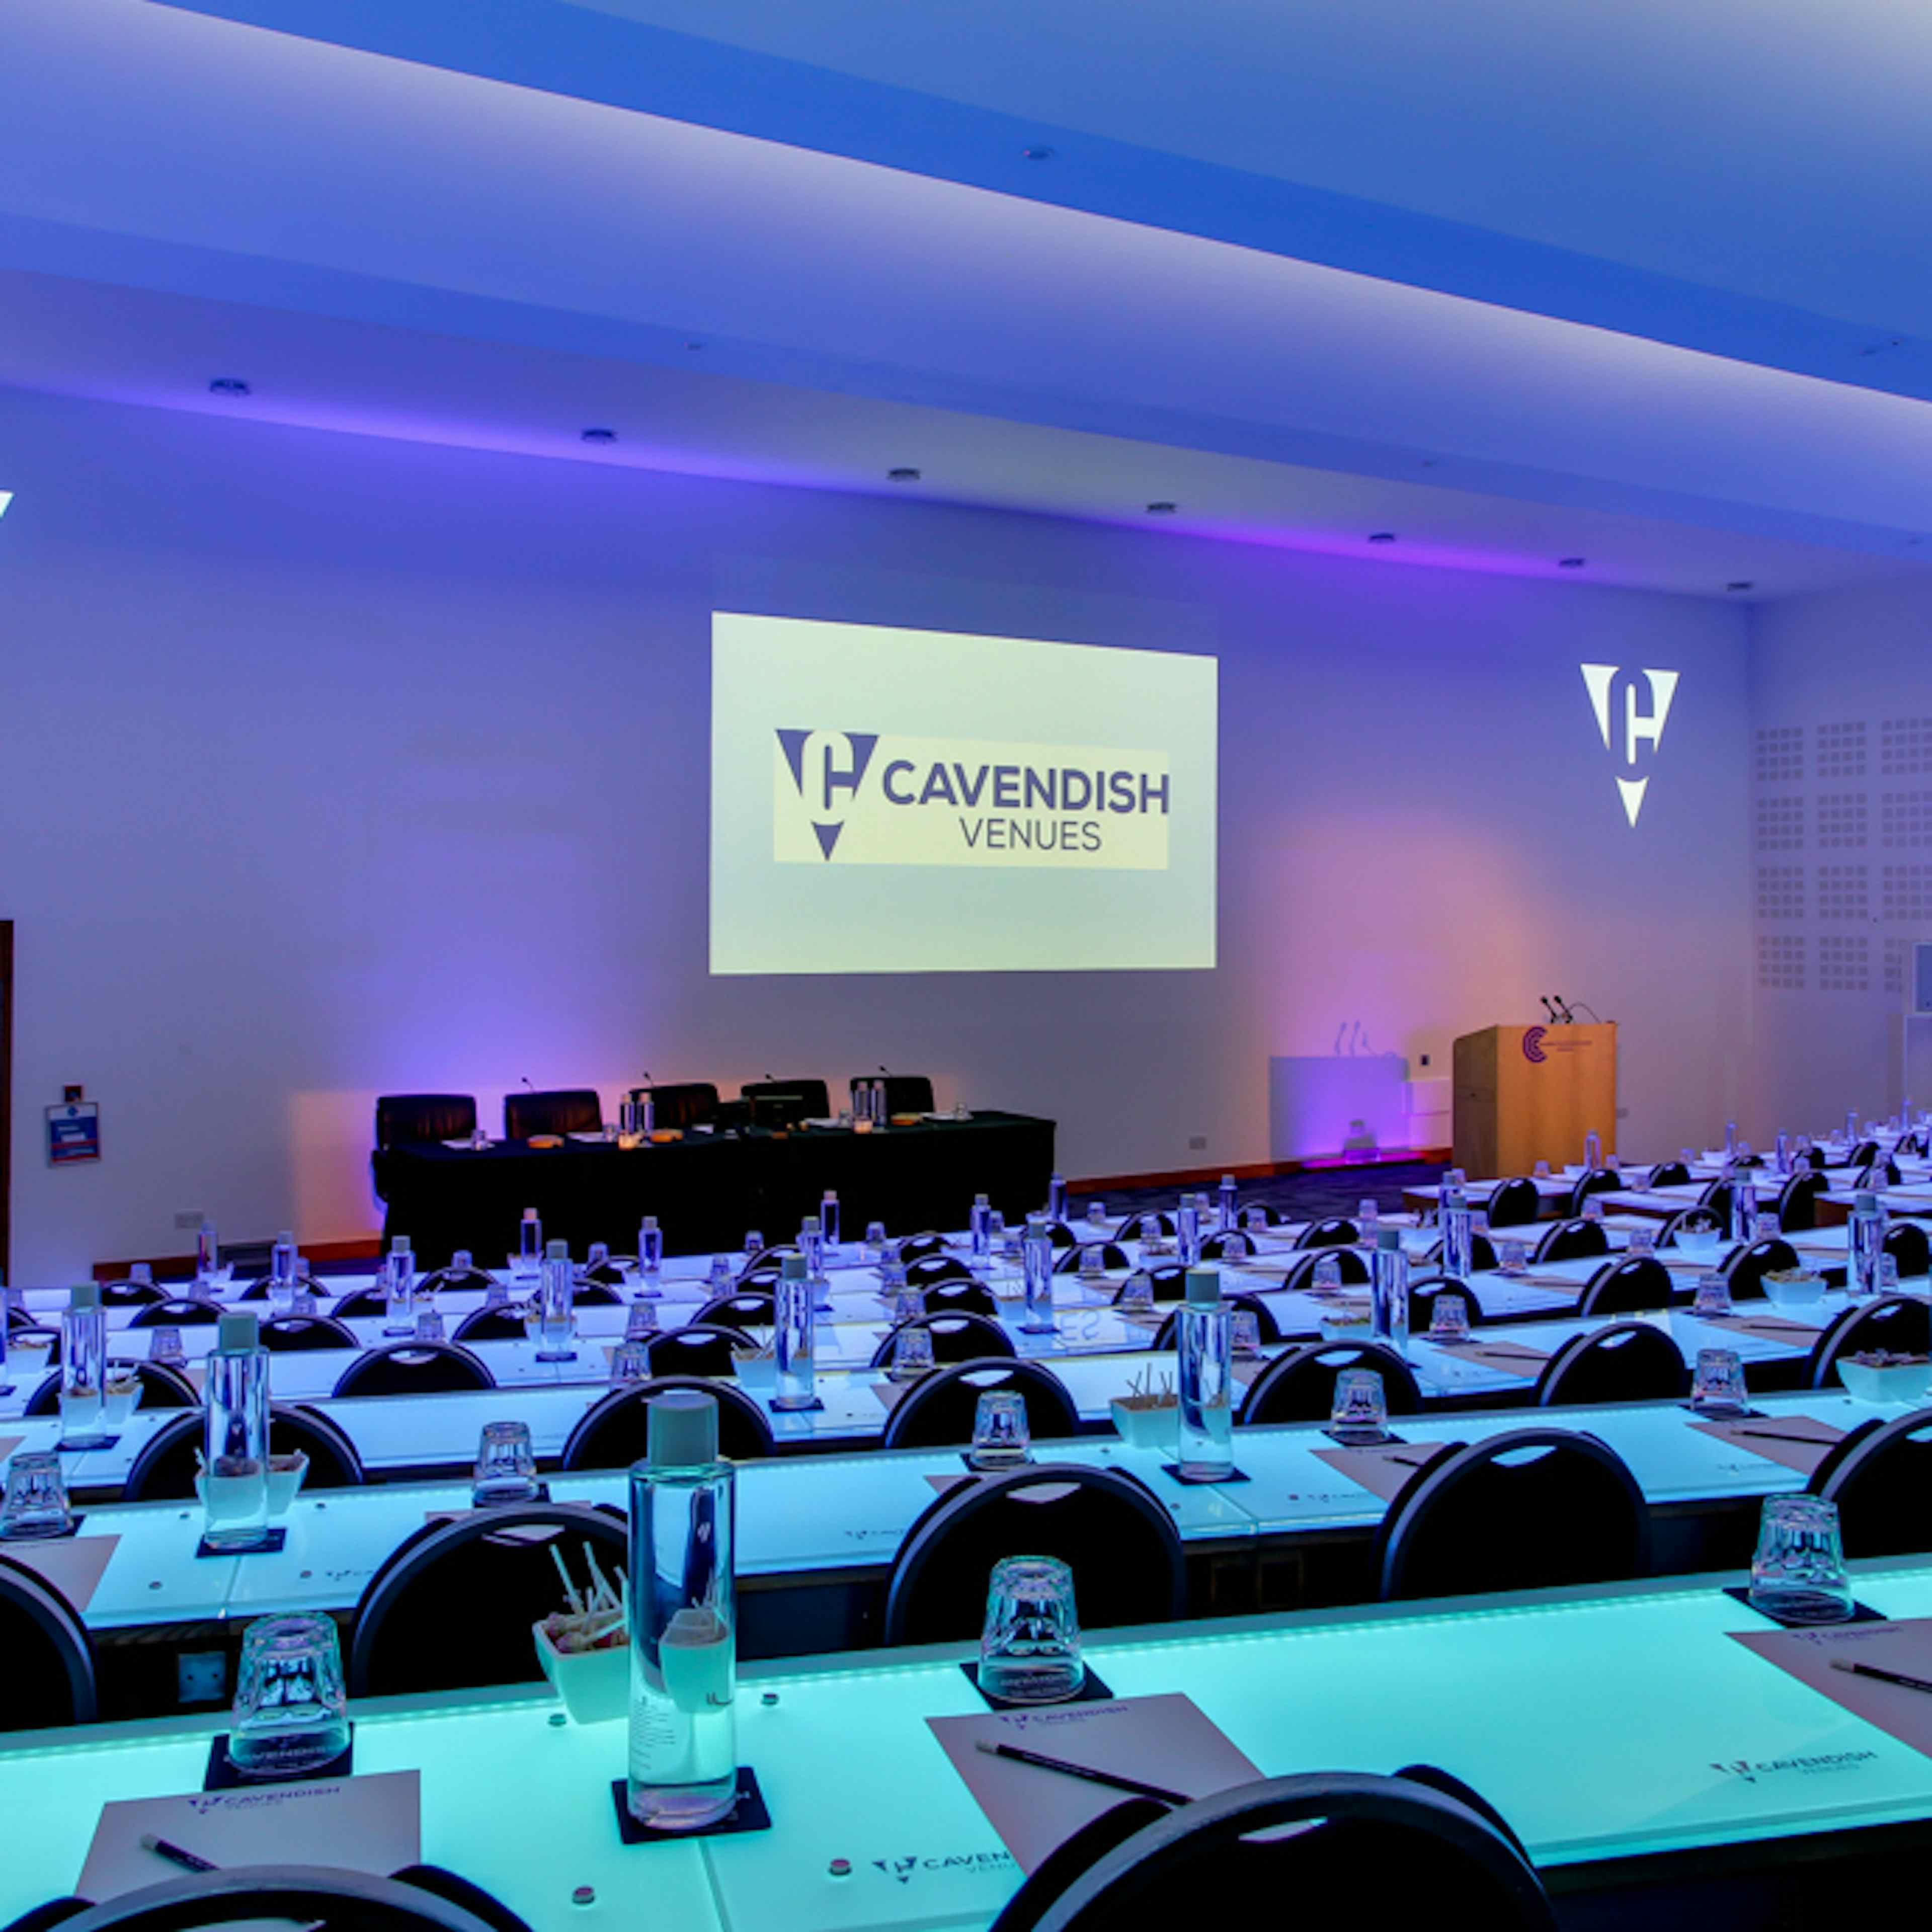 Cavendish Conference Centre - Auditorium  image 2